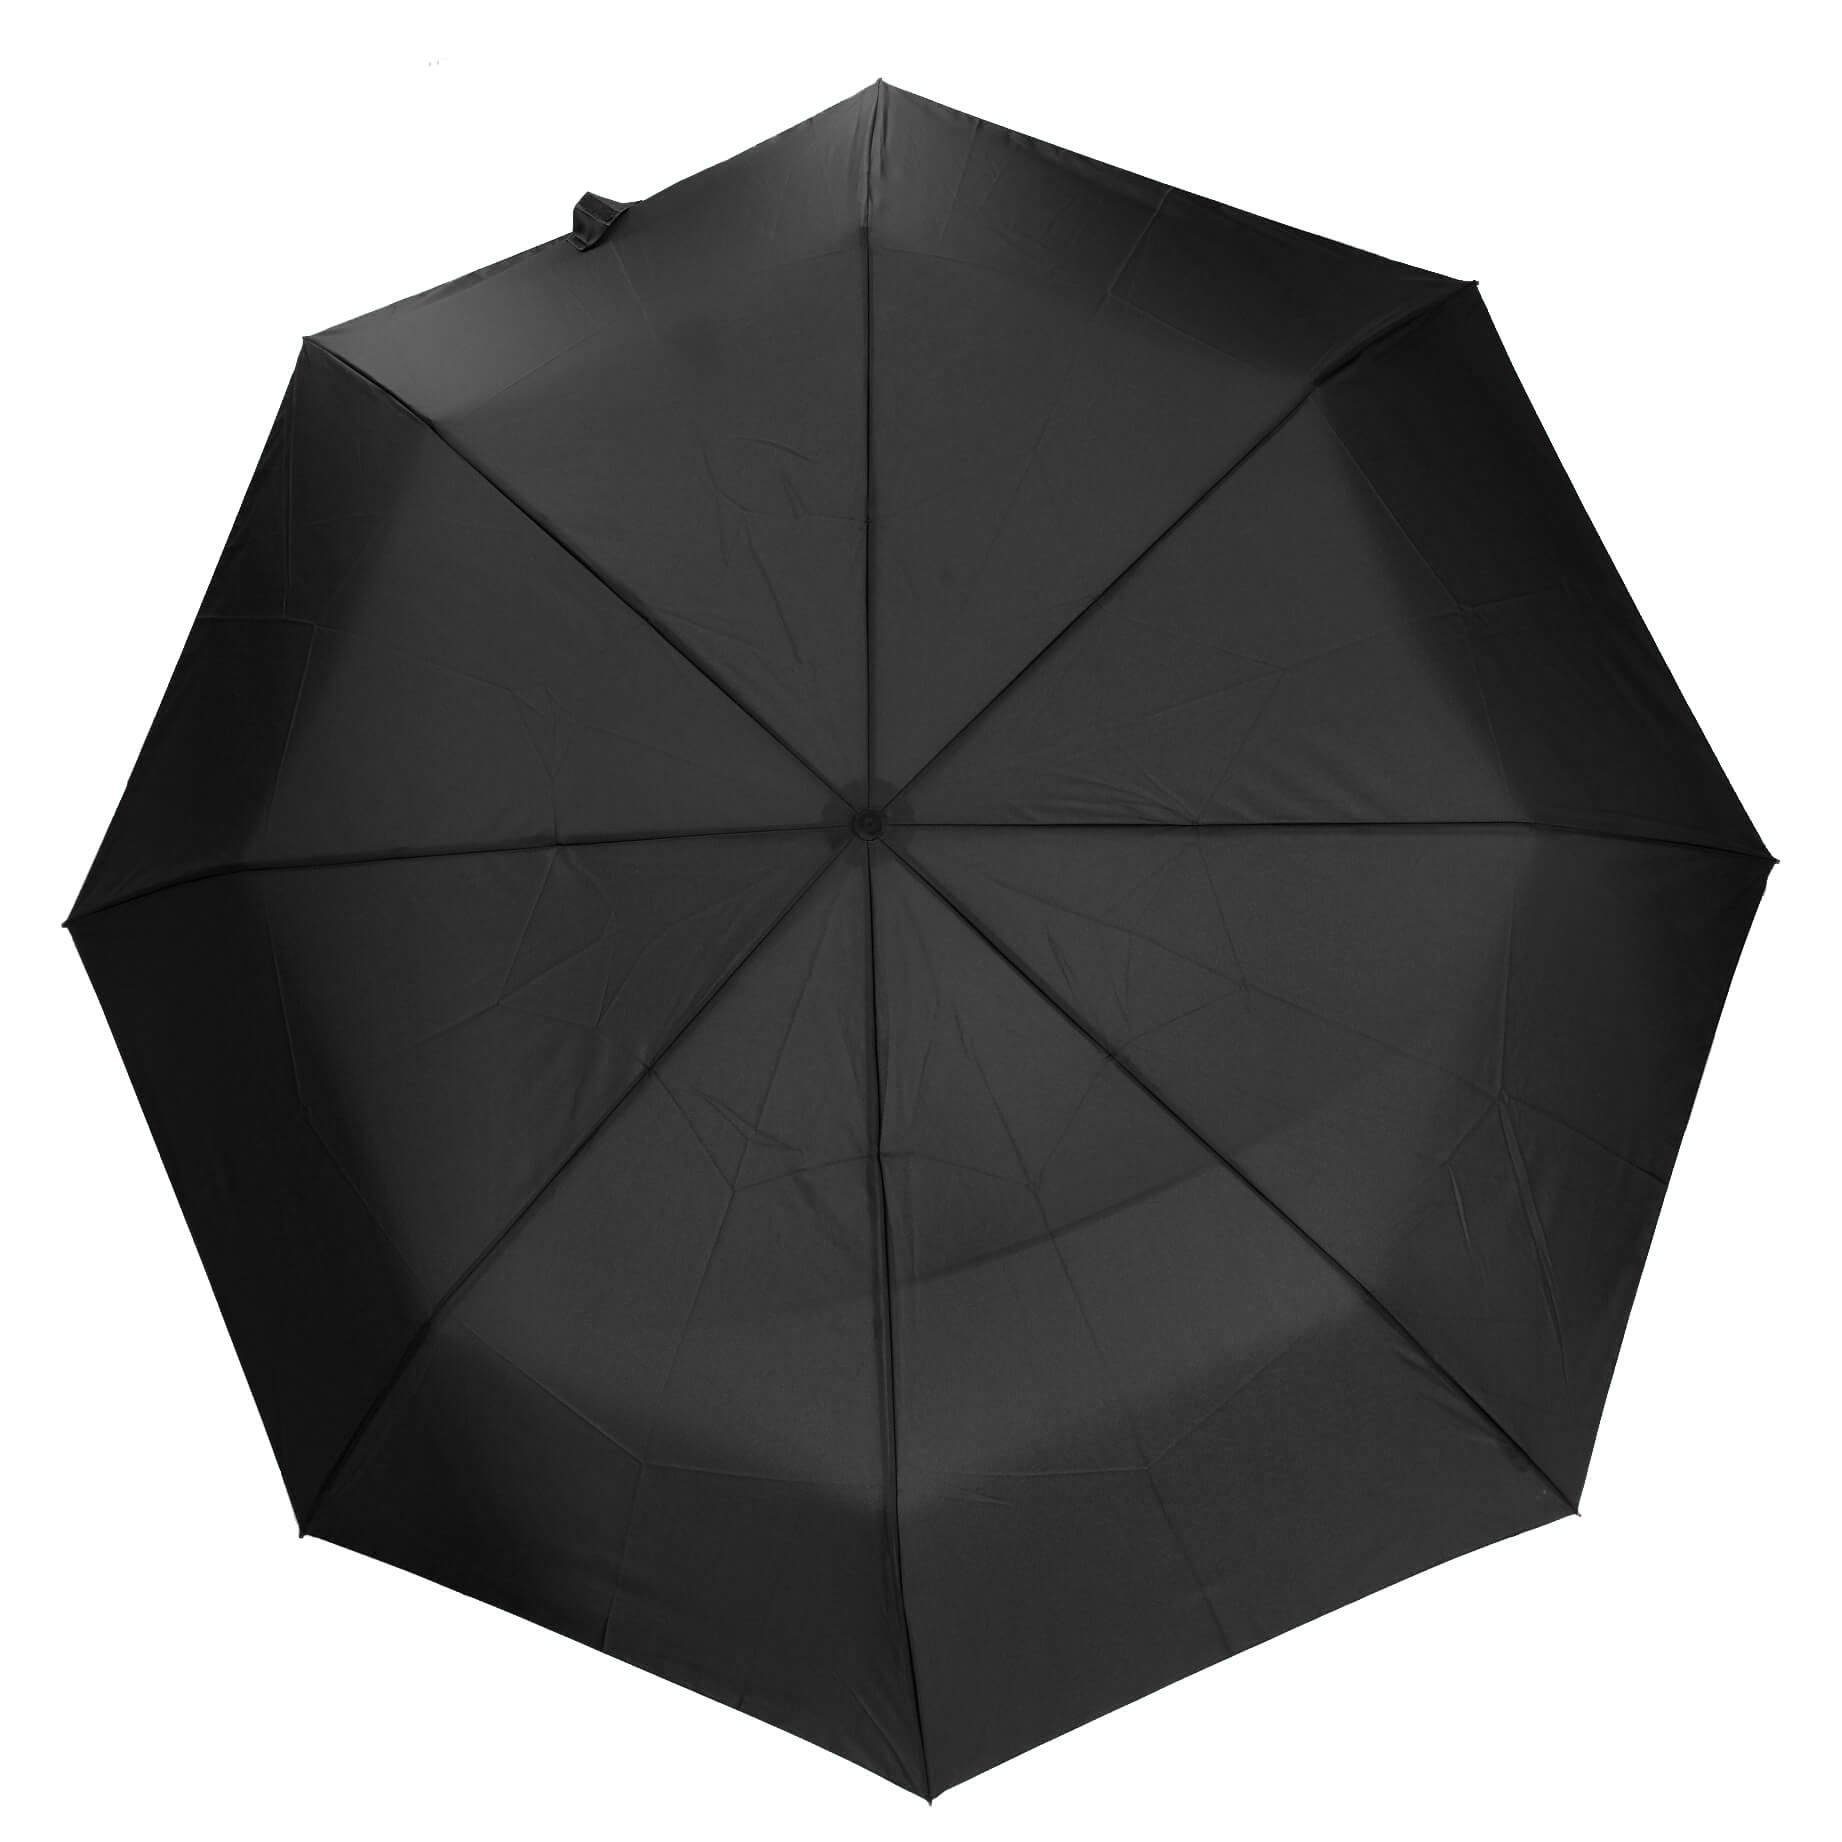 THE BRIDGE Taschenregenschirm Ombrelli - Regenschirm 115 cm black